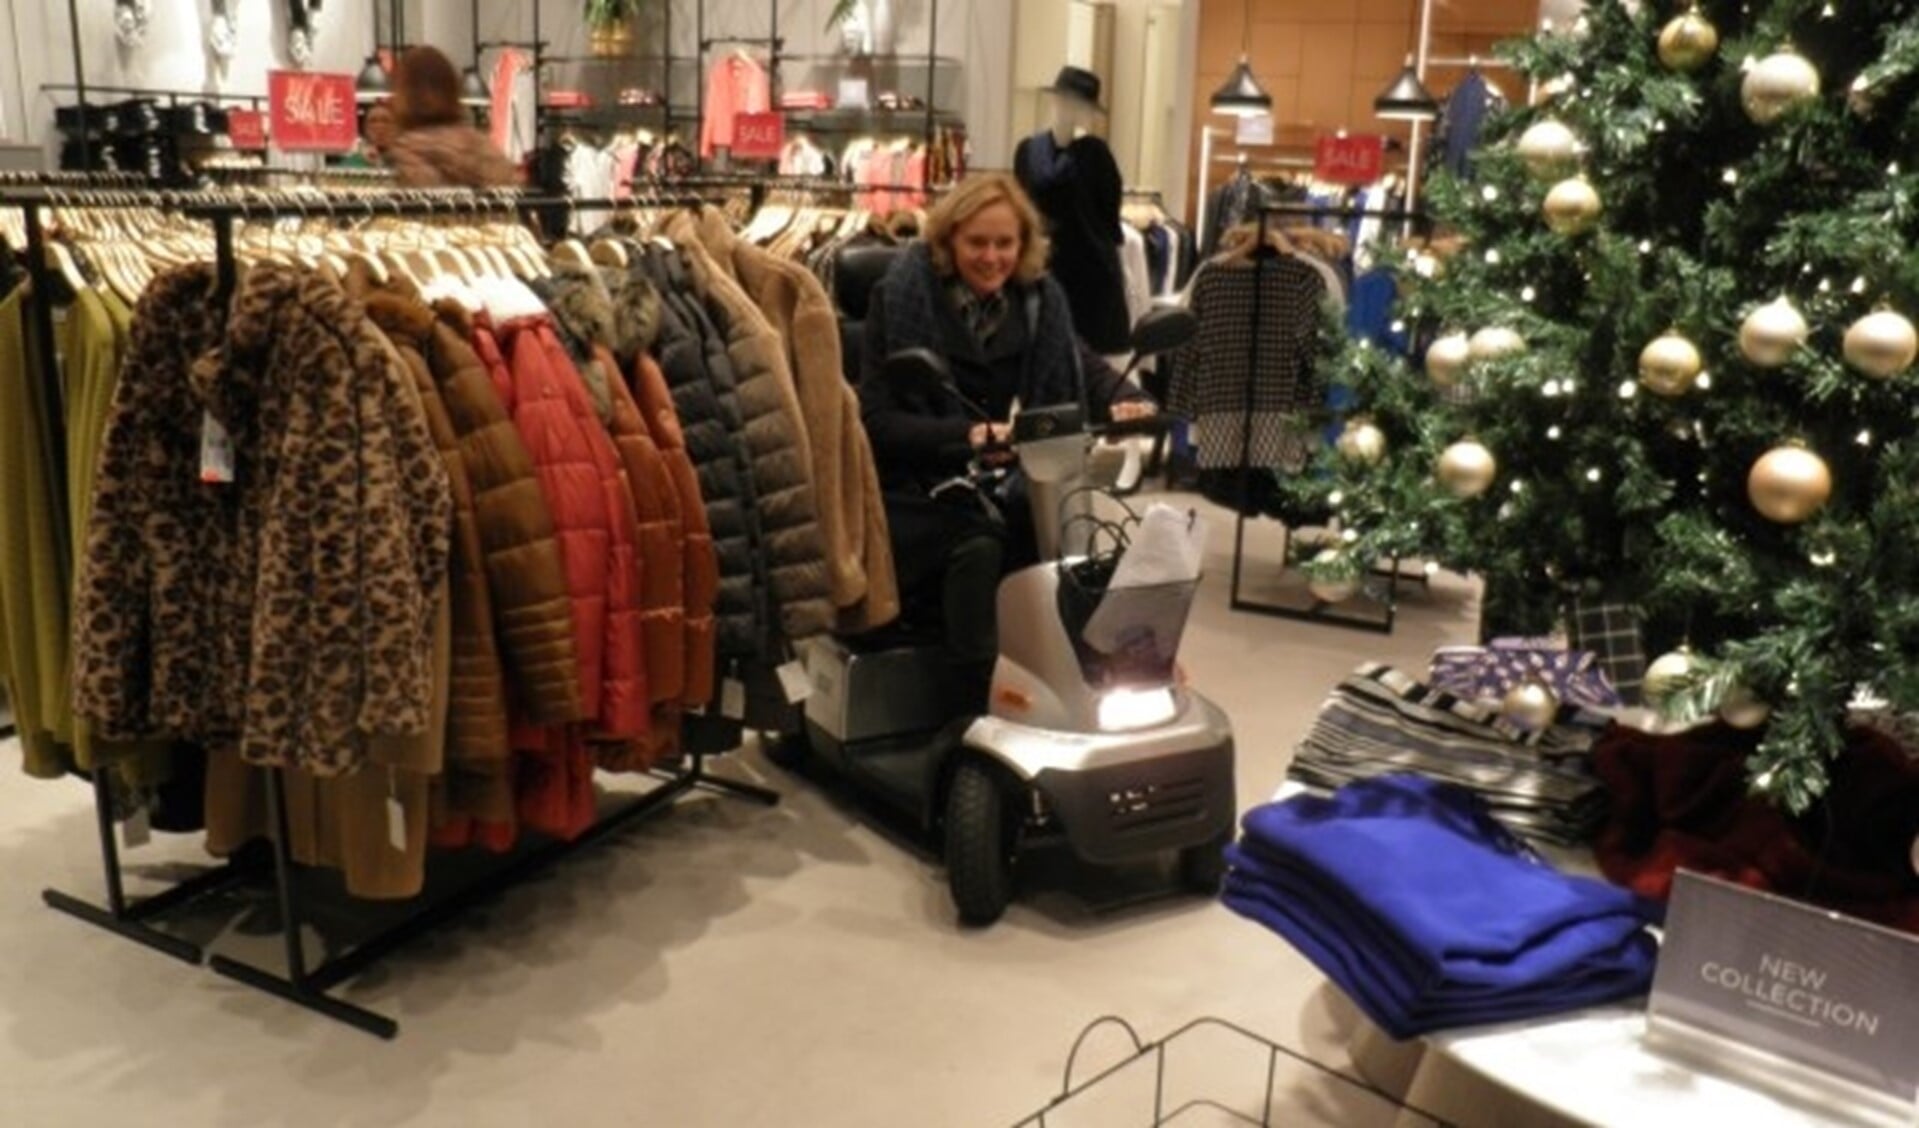 Wethouder Ingeborg ter Laak ervaart hoe het is met een scootmobiel naar kleding voor de feestdagen te zoeken. Foto Kees van Rongen